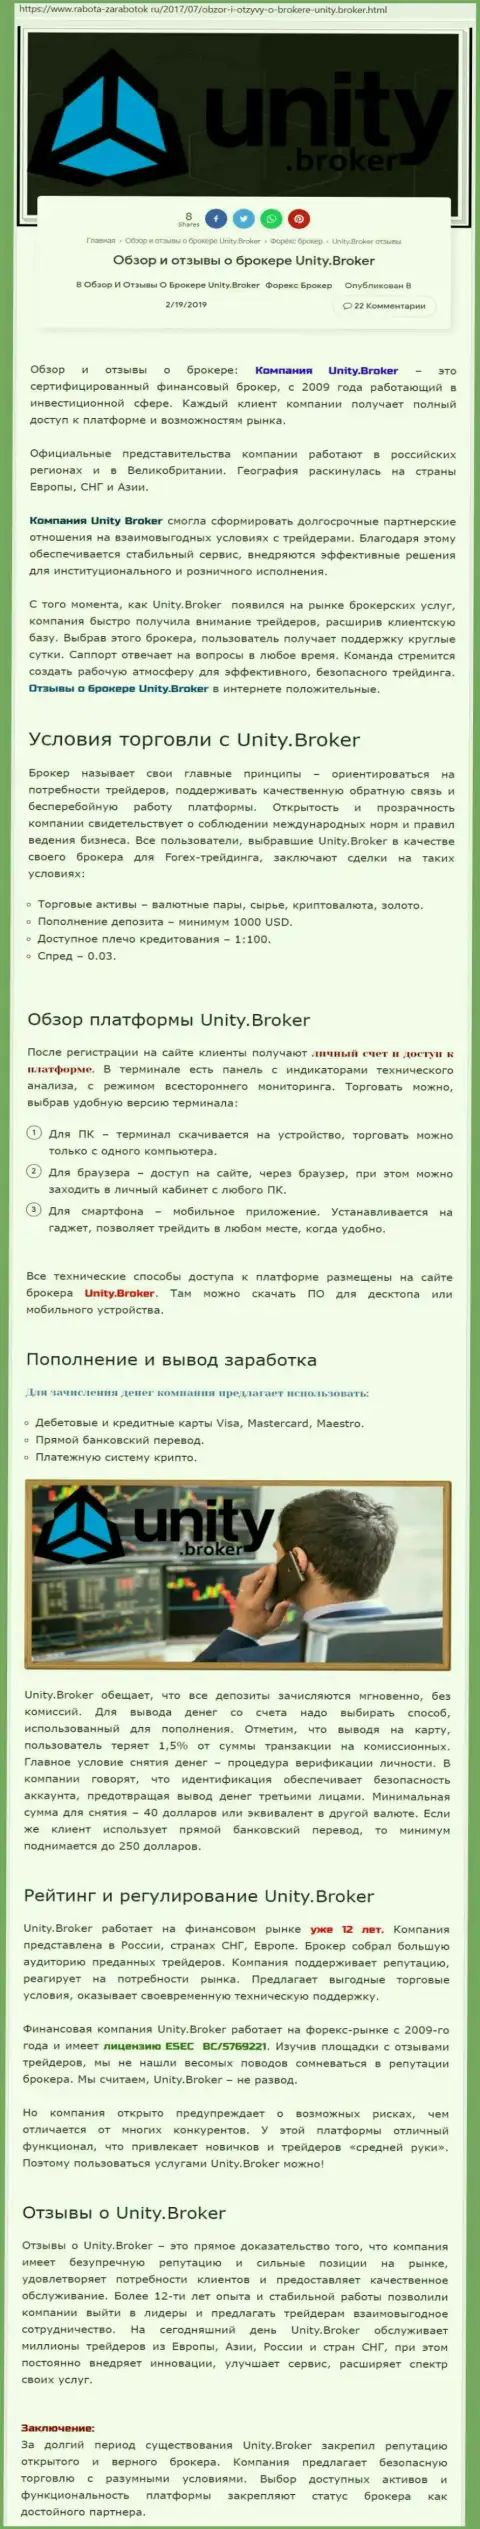 Обзорная информация ФОРЕКС организации Unity Broker на онлайн-сервисе rabota zarabotok ru